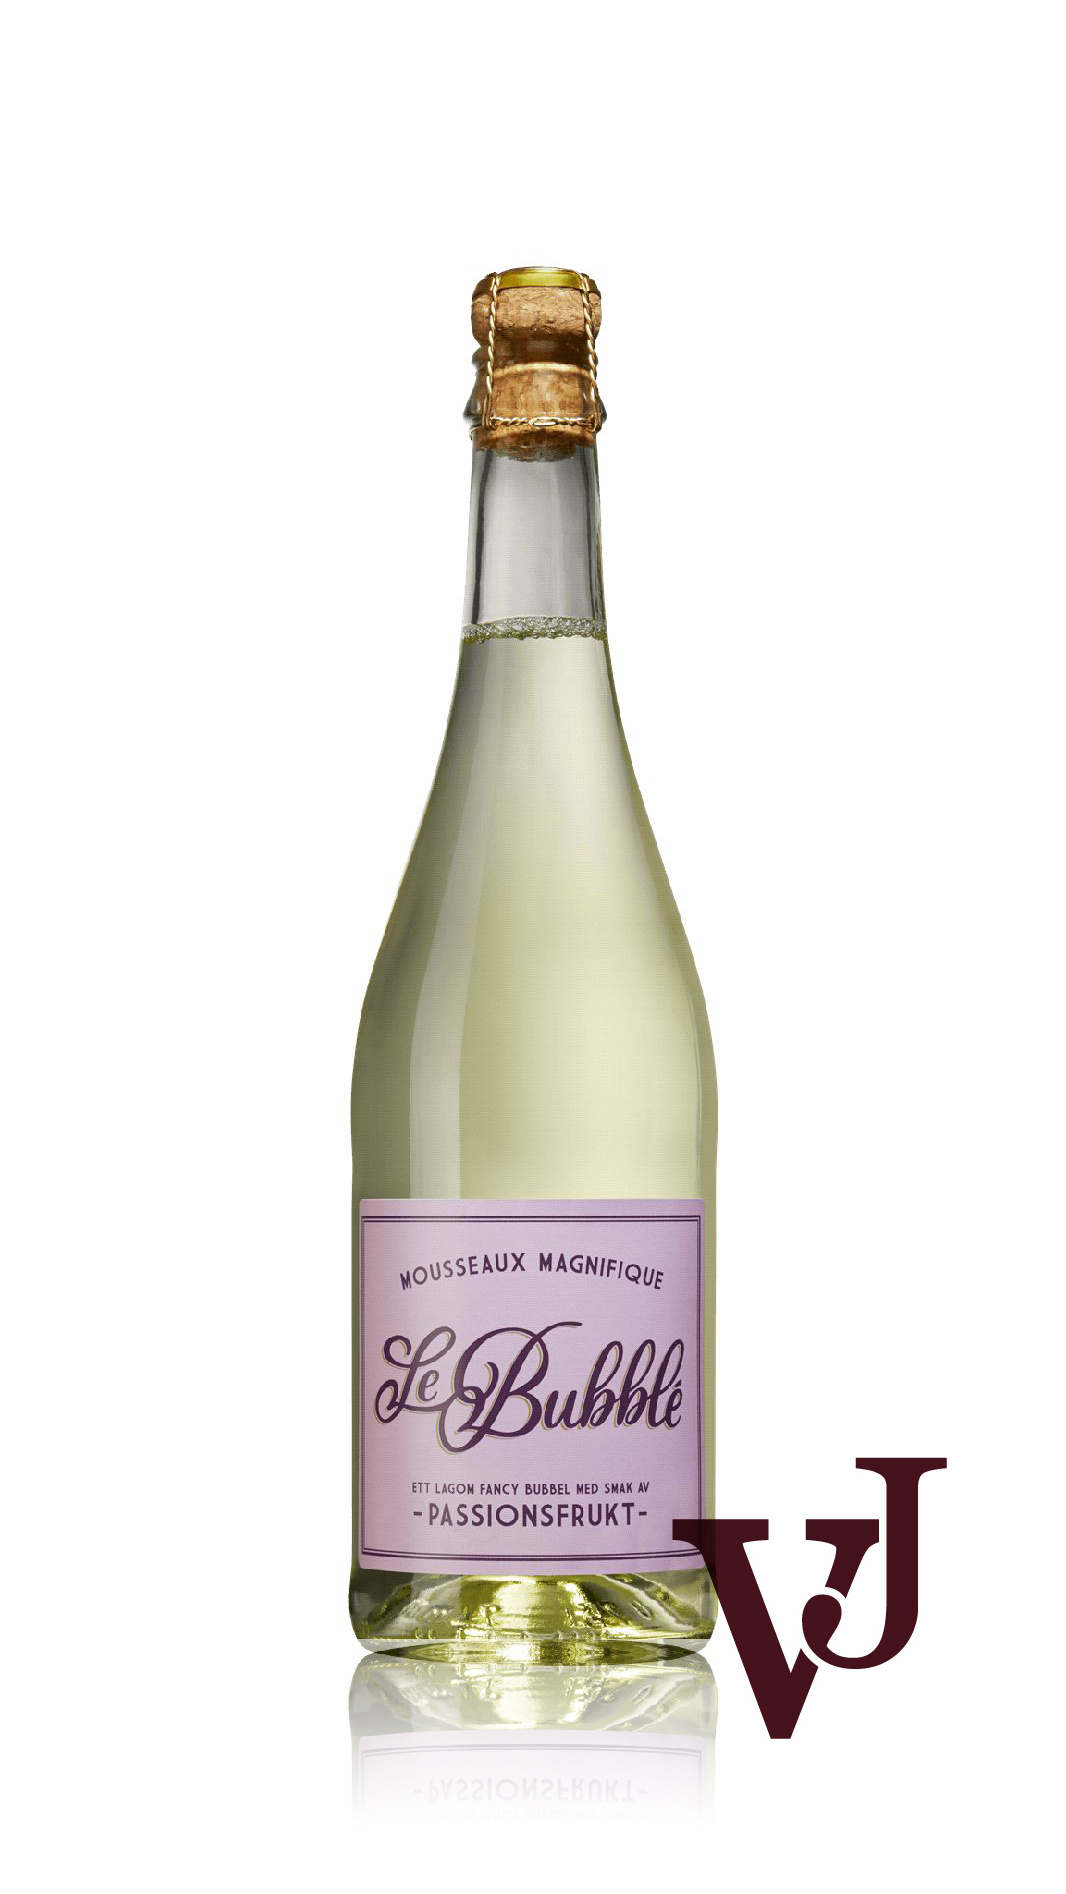 Mousserande Vin - Le Bubblé artikel nummer 5489401 från producenten Sundance Wines från området Sverige